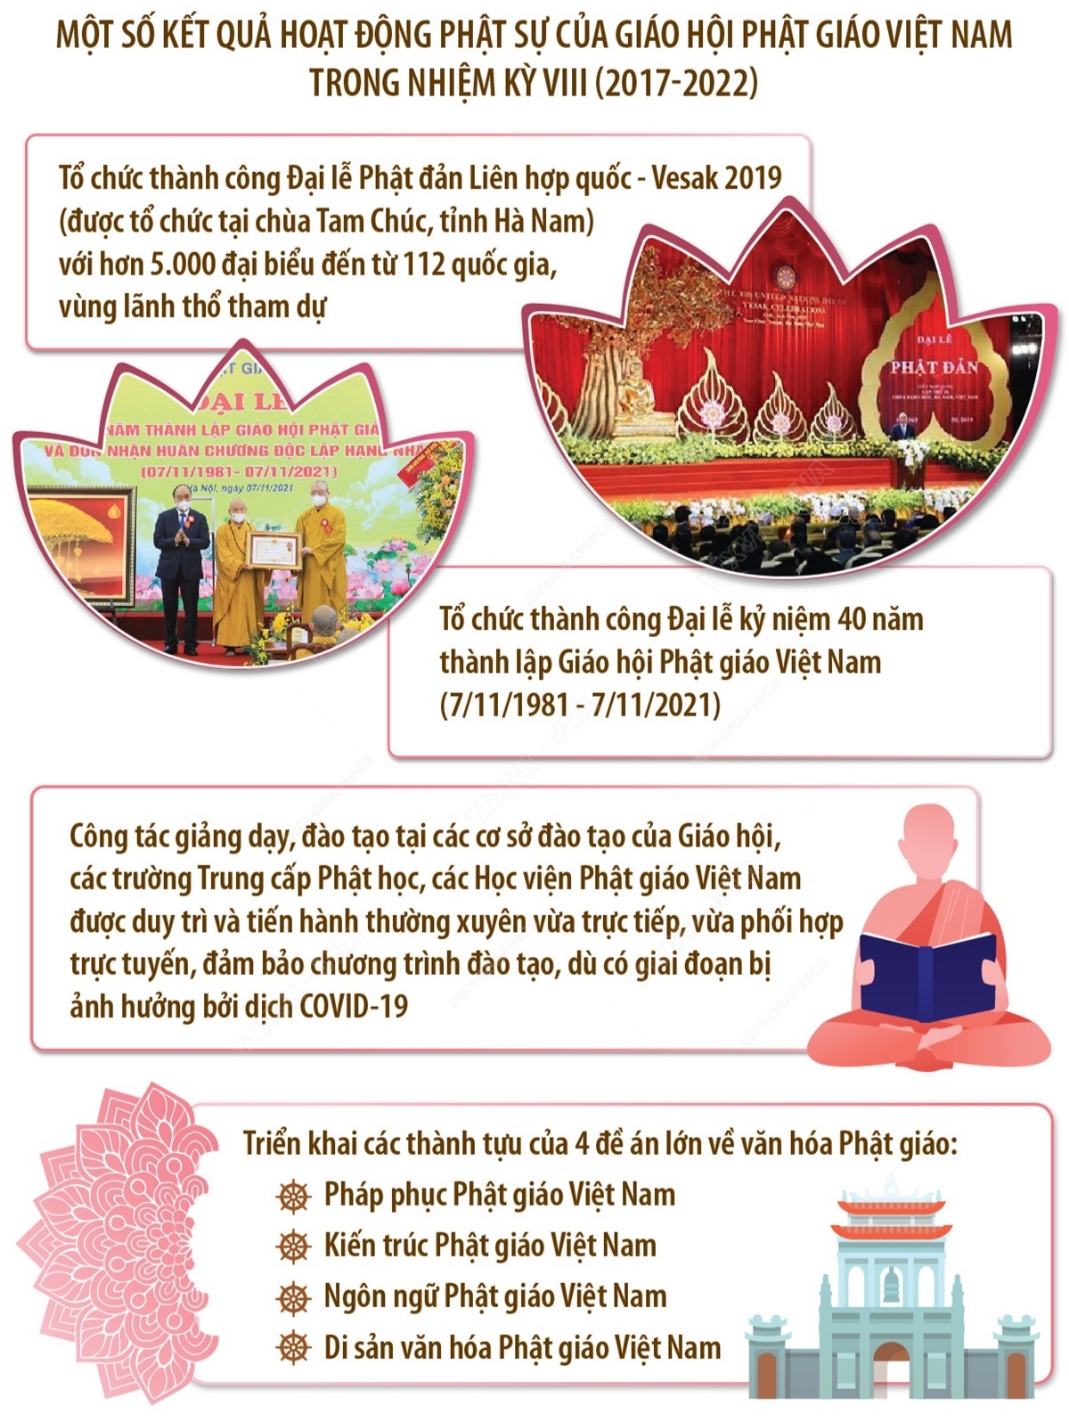 Đại hội Phật giáo: Sự kiện đặc biệt này hội tụ rất nhiều những phẩm chất tốt đẹp từ tín đồ Phật giáo. Hãy xem những hình ảnh đầy tưng bừng và linh thiêng của Đại hội Phật giáo.